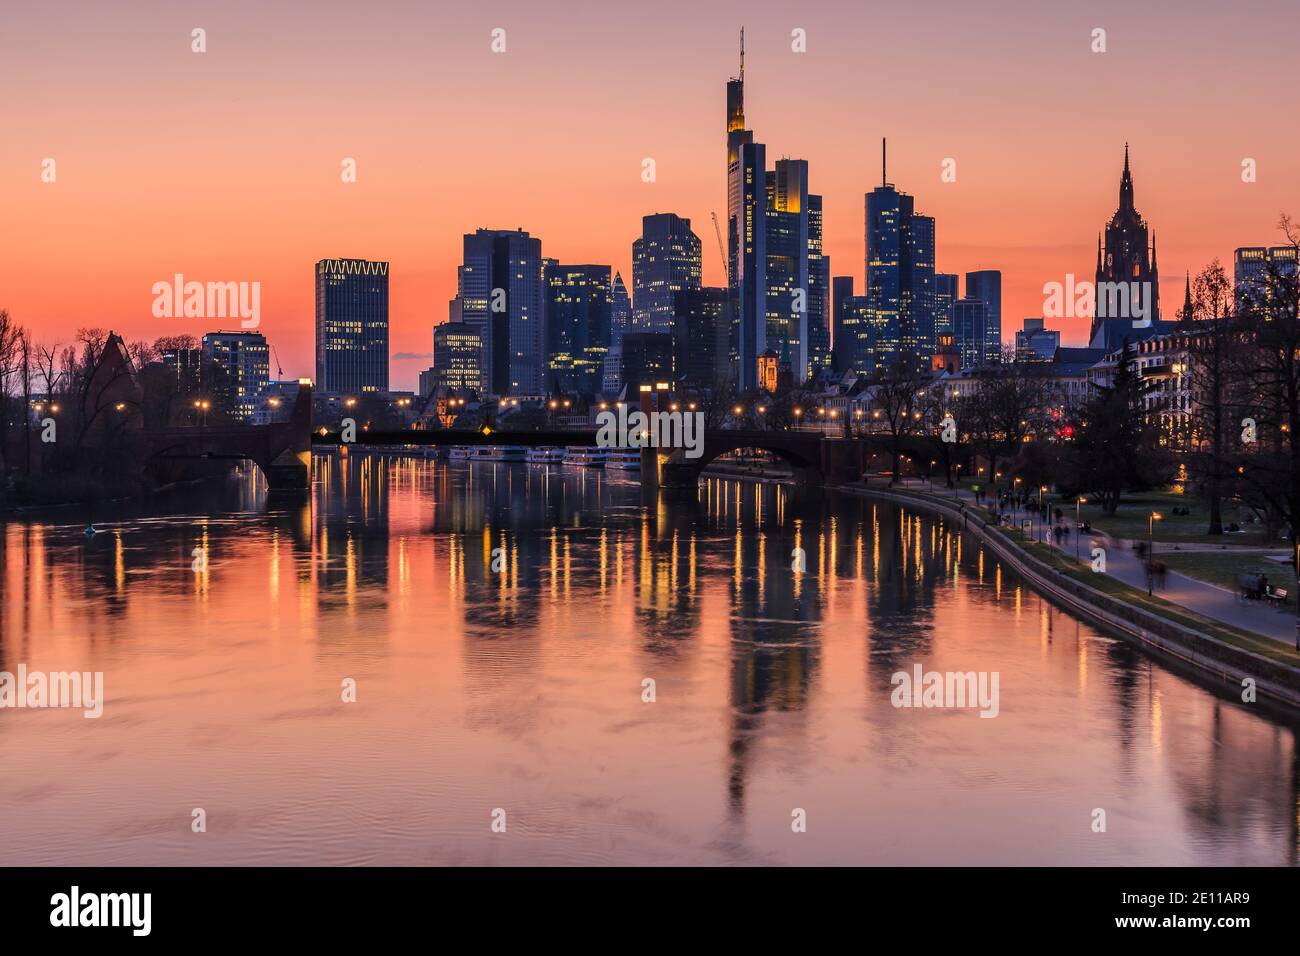 Frankfurter Skyline am Abend. Sonnenuntergang verwandelt den Himmel orange-rot. Reflexionen von beleuchteten Häusern aus dem Finanzviertel am Main Stockfoto